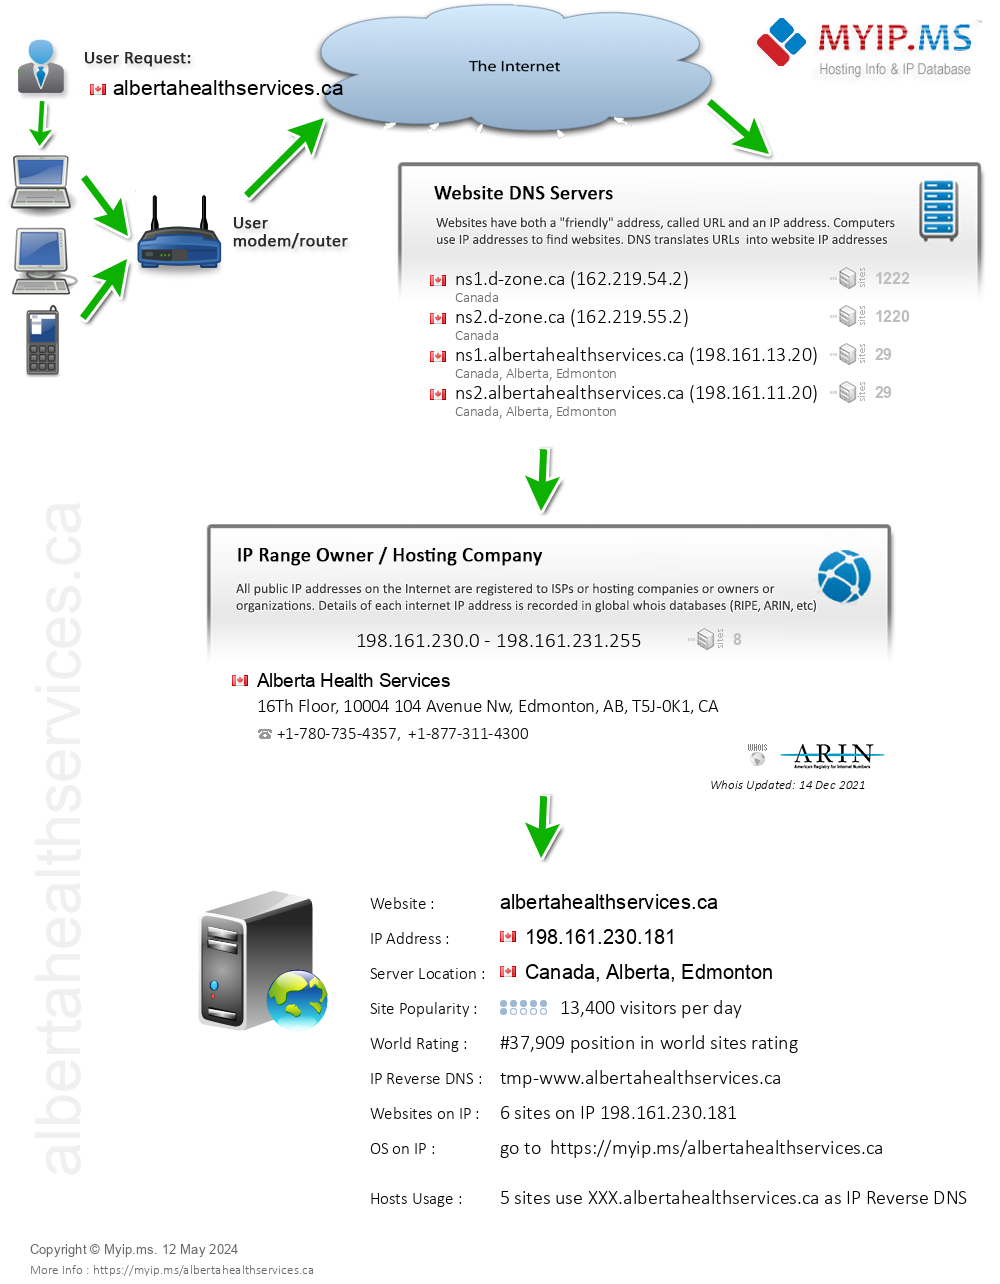 Albertahealthservices.ca - Website Hosting Visual IP Diagram